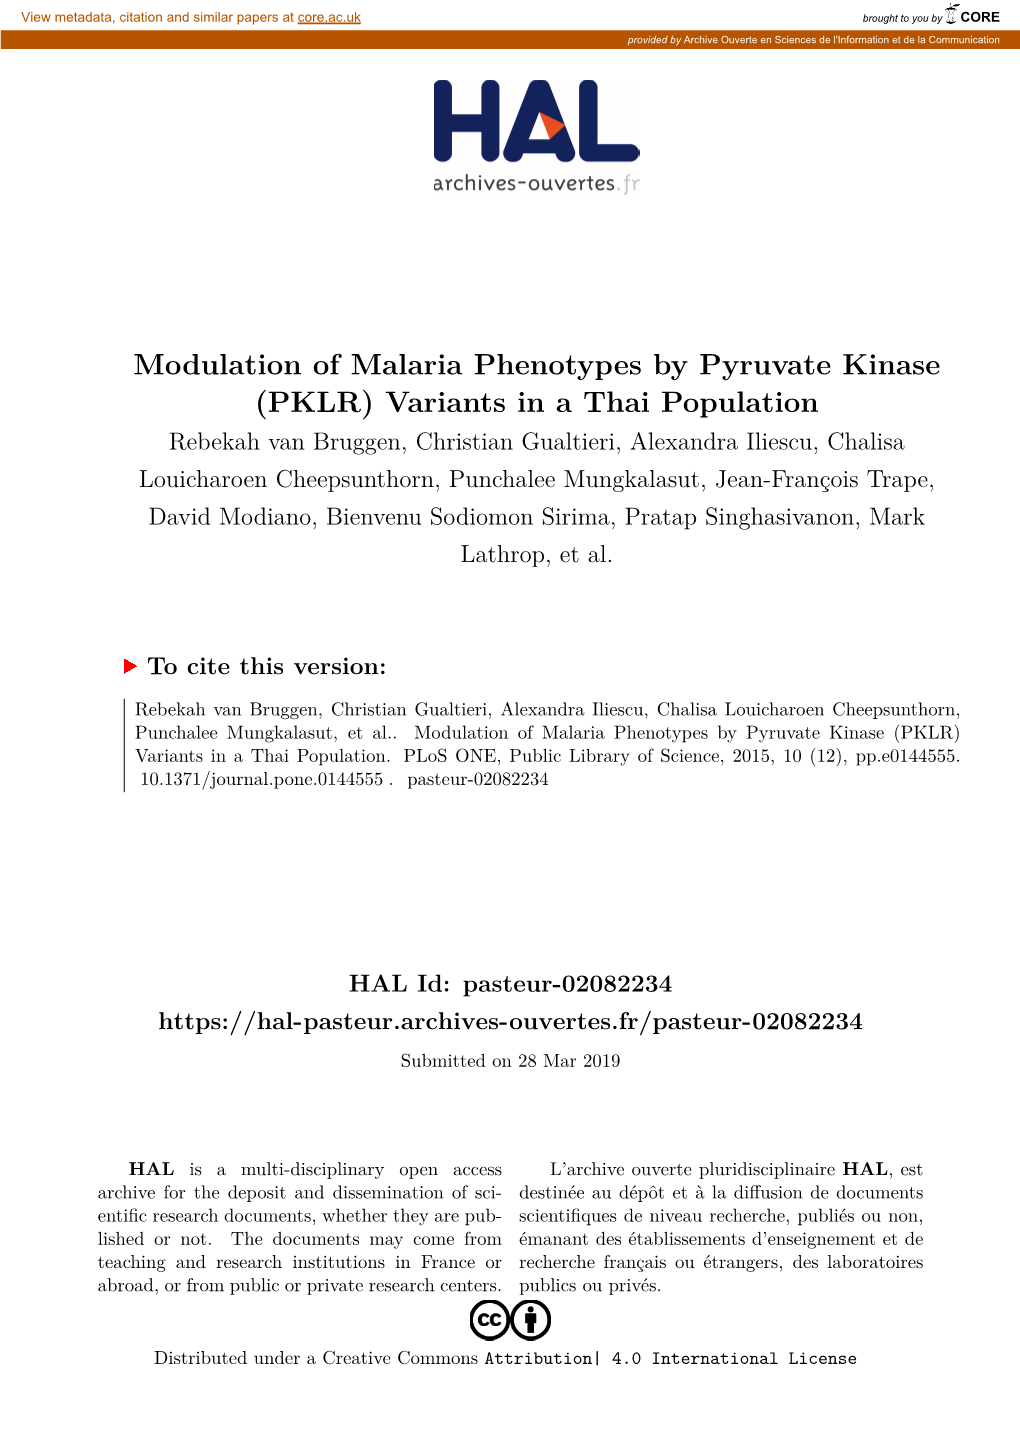 Modulation of Malaria Phenotypes by Pyruvate Kinase (PKLR)